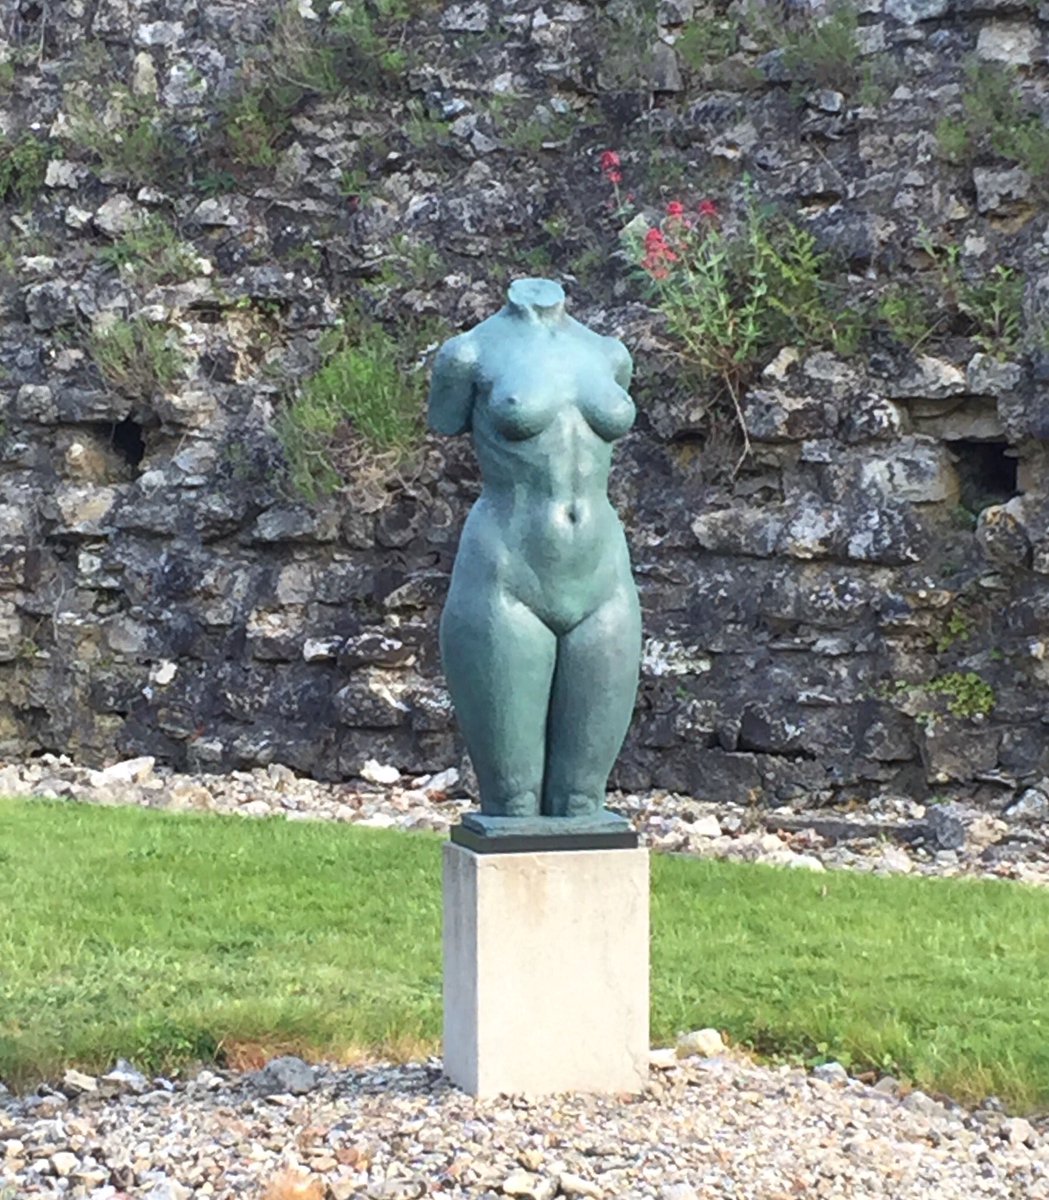 Humm MiLady is at Beaulieu 
X
X
#FridayThoughts #bronzesculpture #gardensculpture #curvaceous #artforsale @Beaulieu_Hants